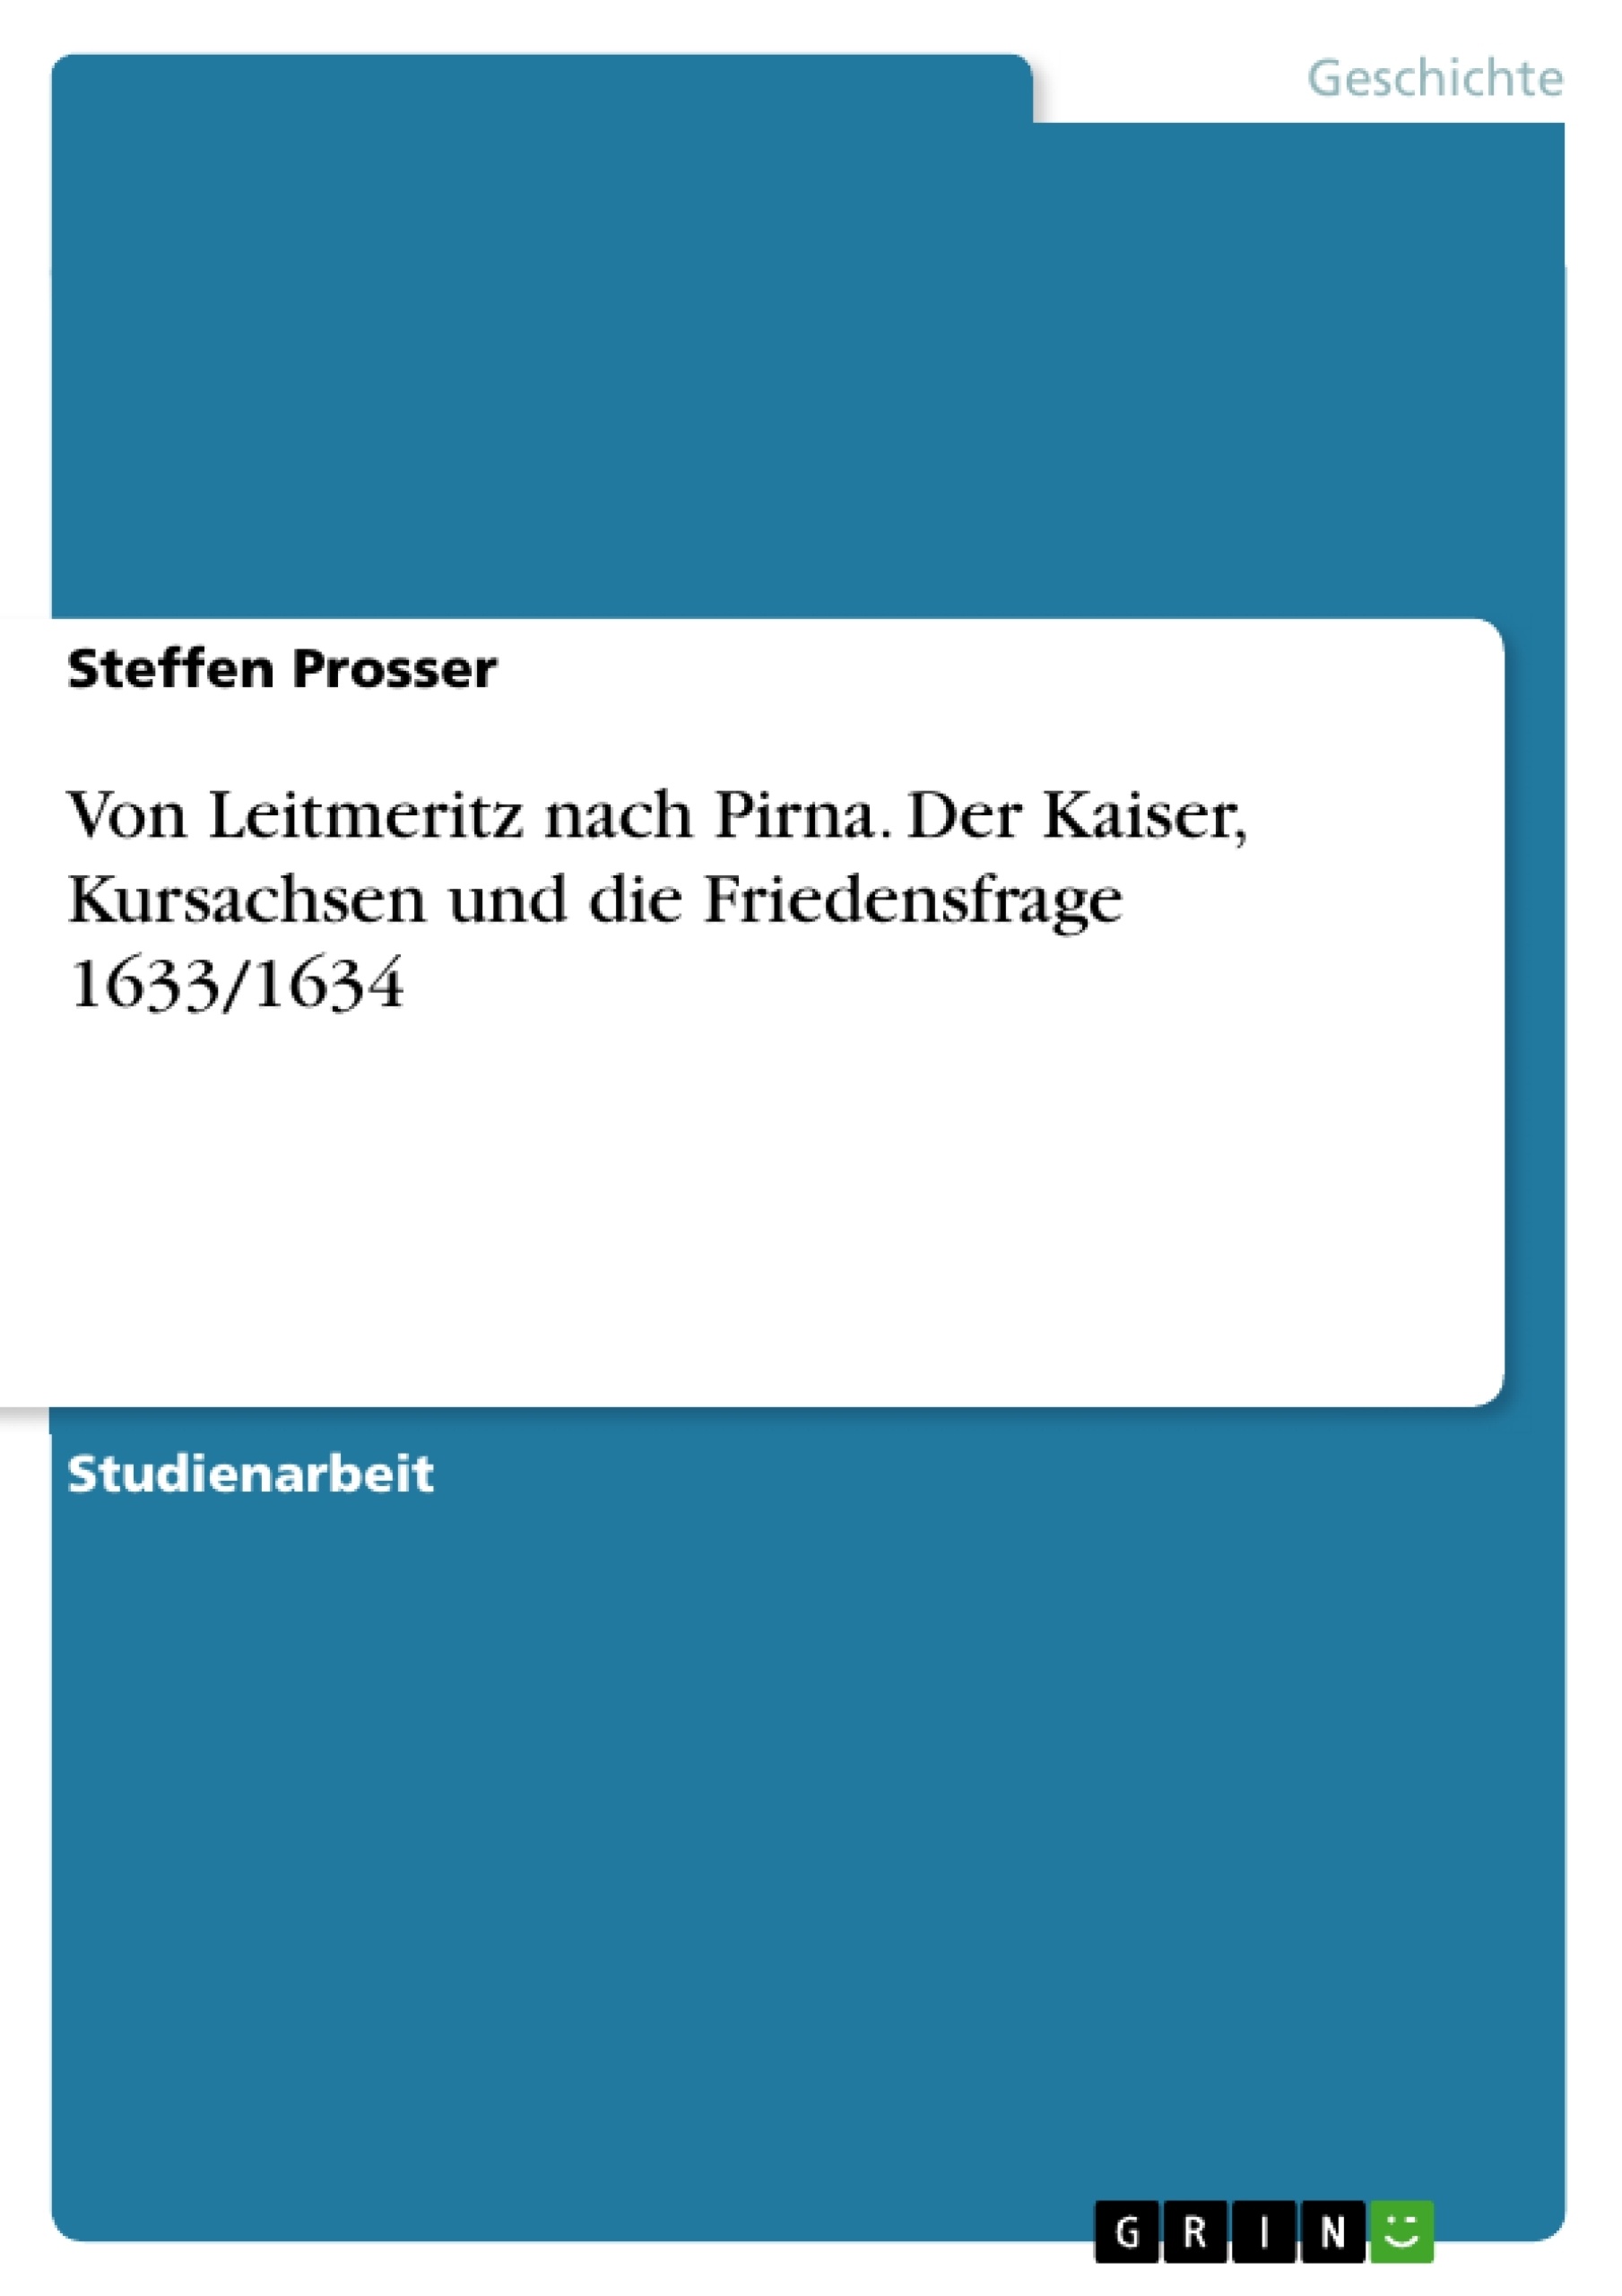 Title: Von Leitmeritz nach Pirna. Der Kaiser, Kursachsen und die Friedensfrage 1633/1634